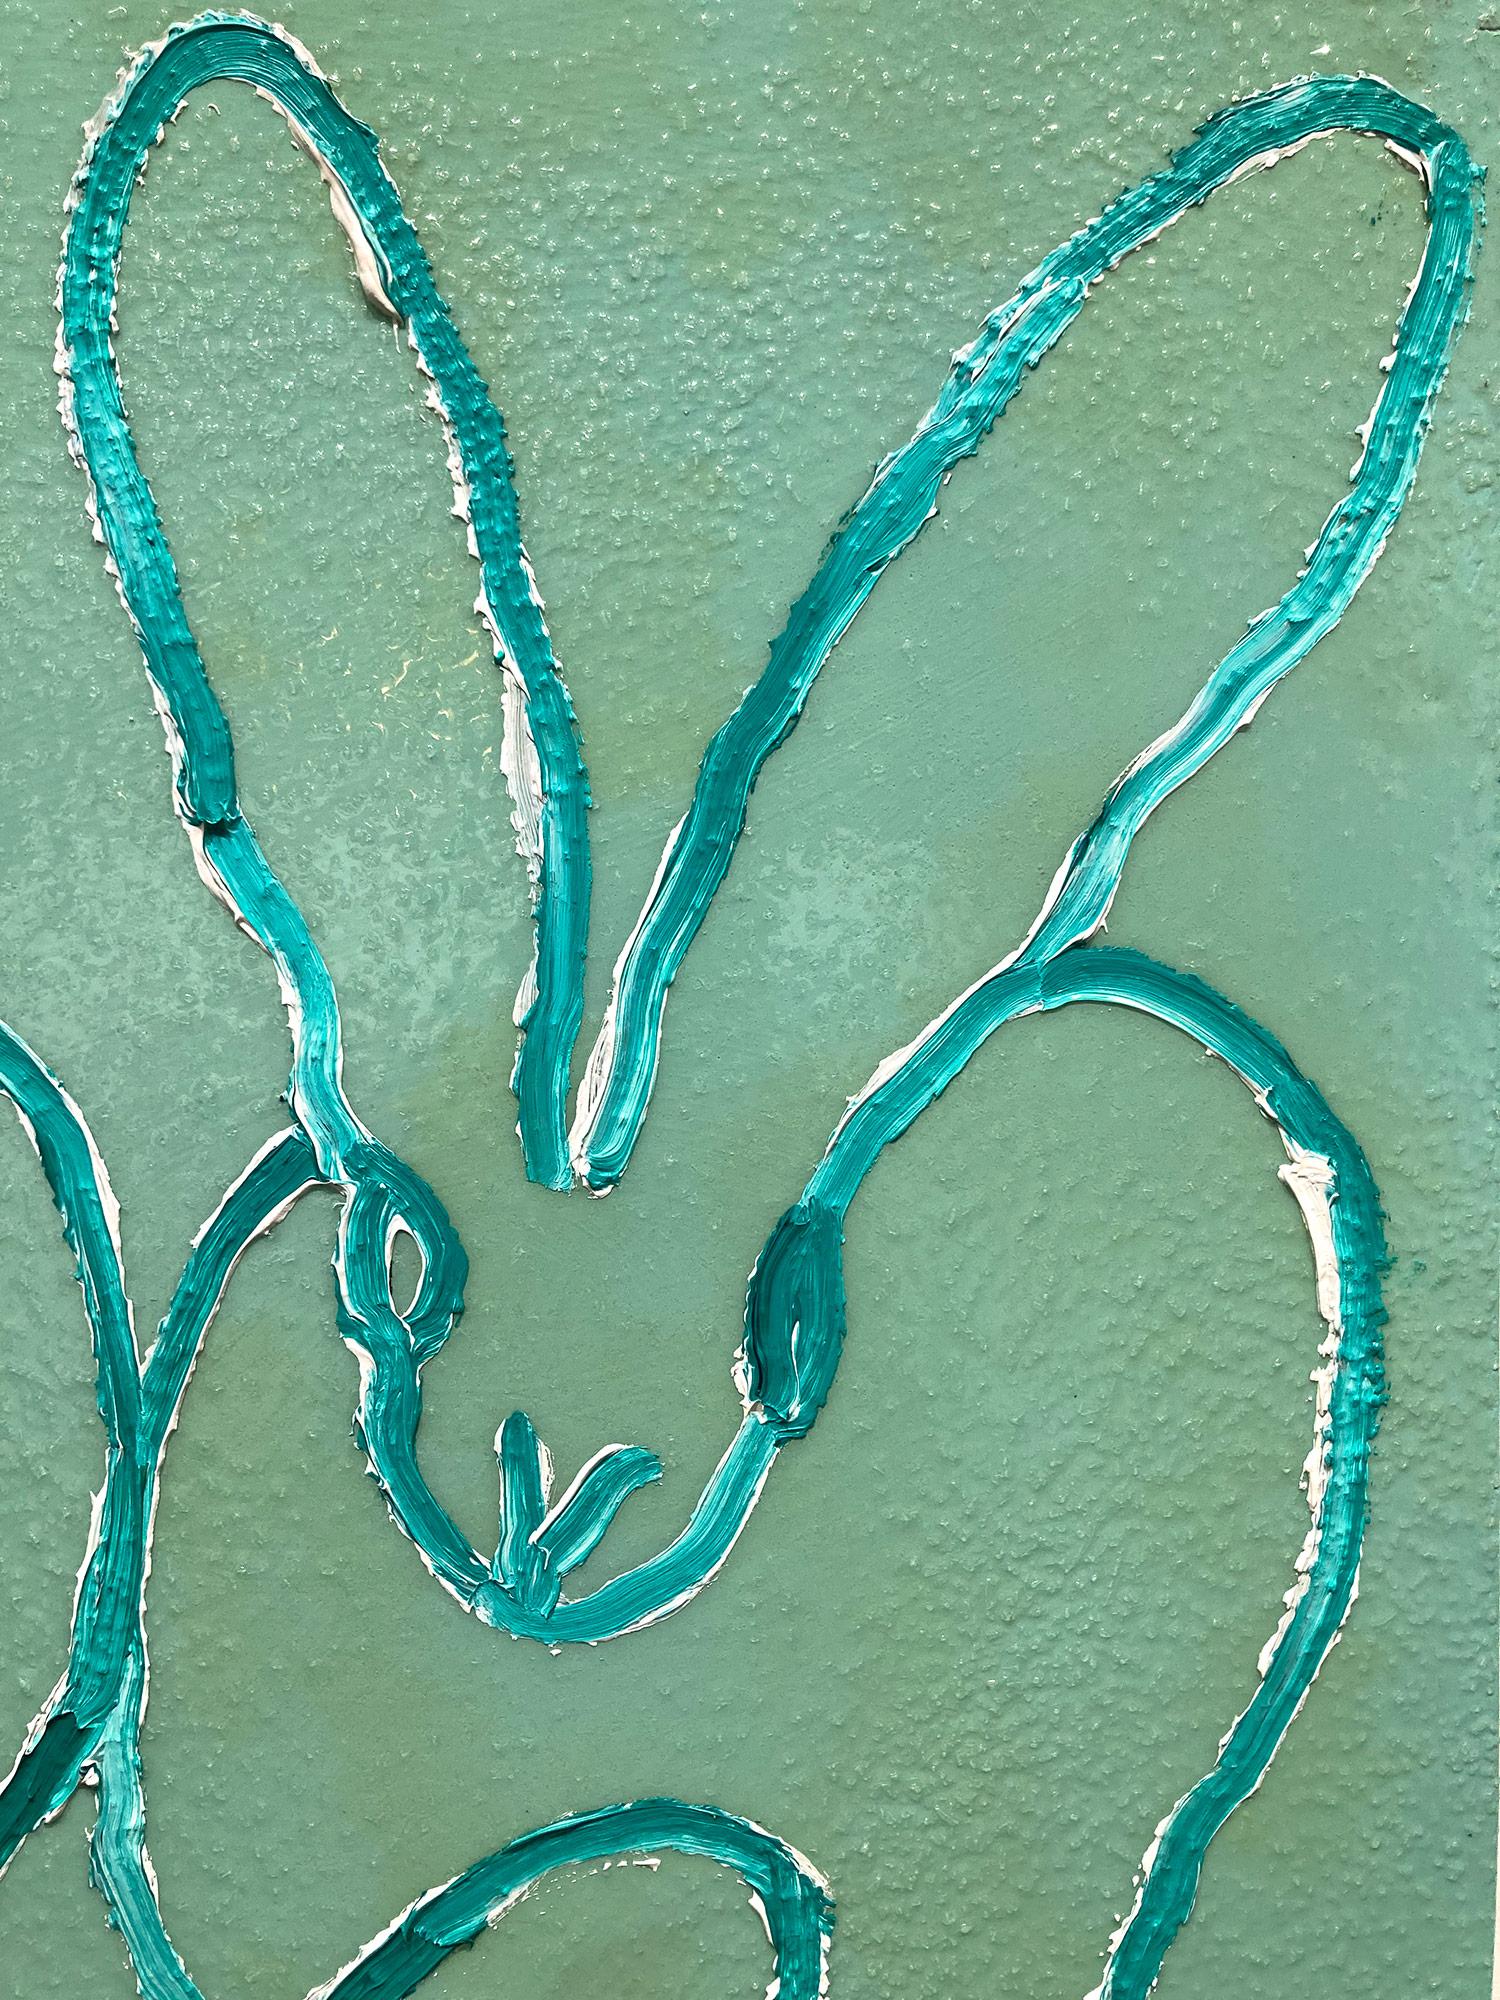 Eine wunderbare Komposition eines der ikonischsten Themen von Slonem, nämlich Hasen. Dieses Werk zeigt gestische Figuren weißer Hasen auf einem hellgrünen Hintergrund mit dickem Farbauftrag und Diamantstaub. Inspiriert von der Natur und einer echten